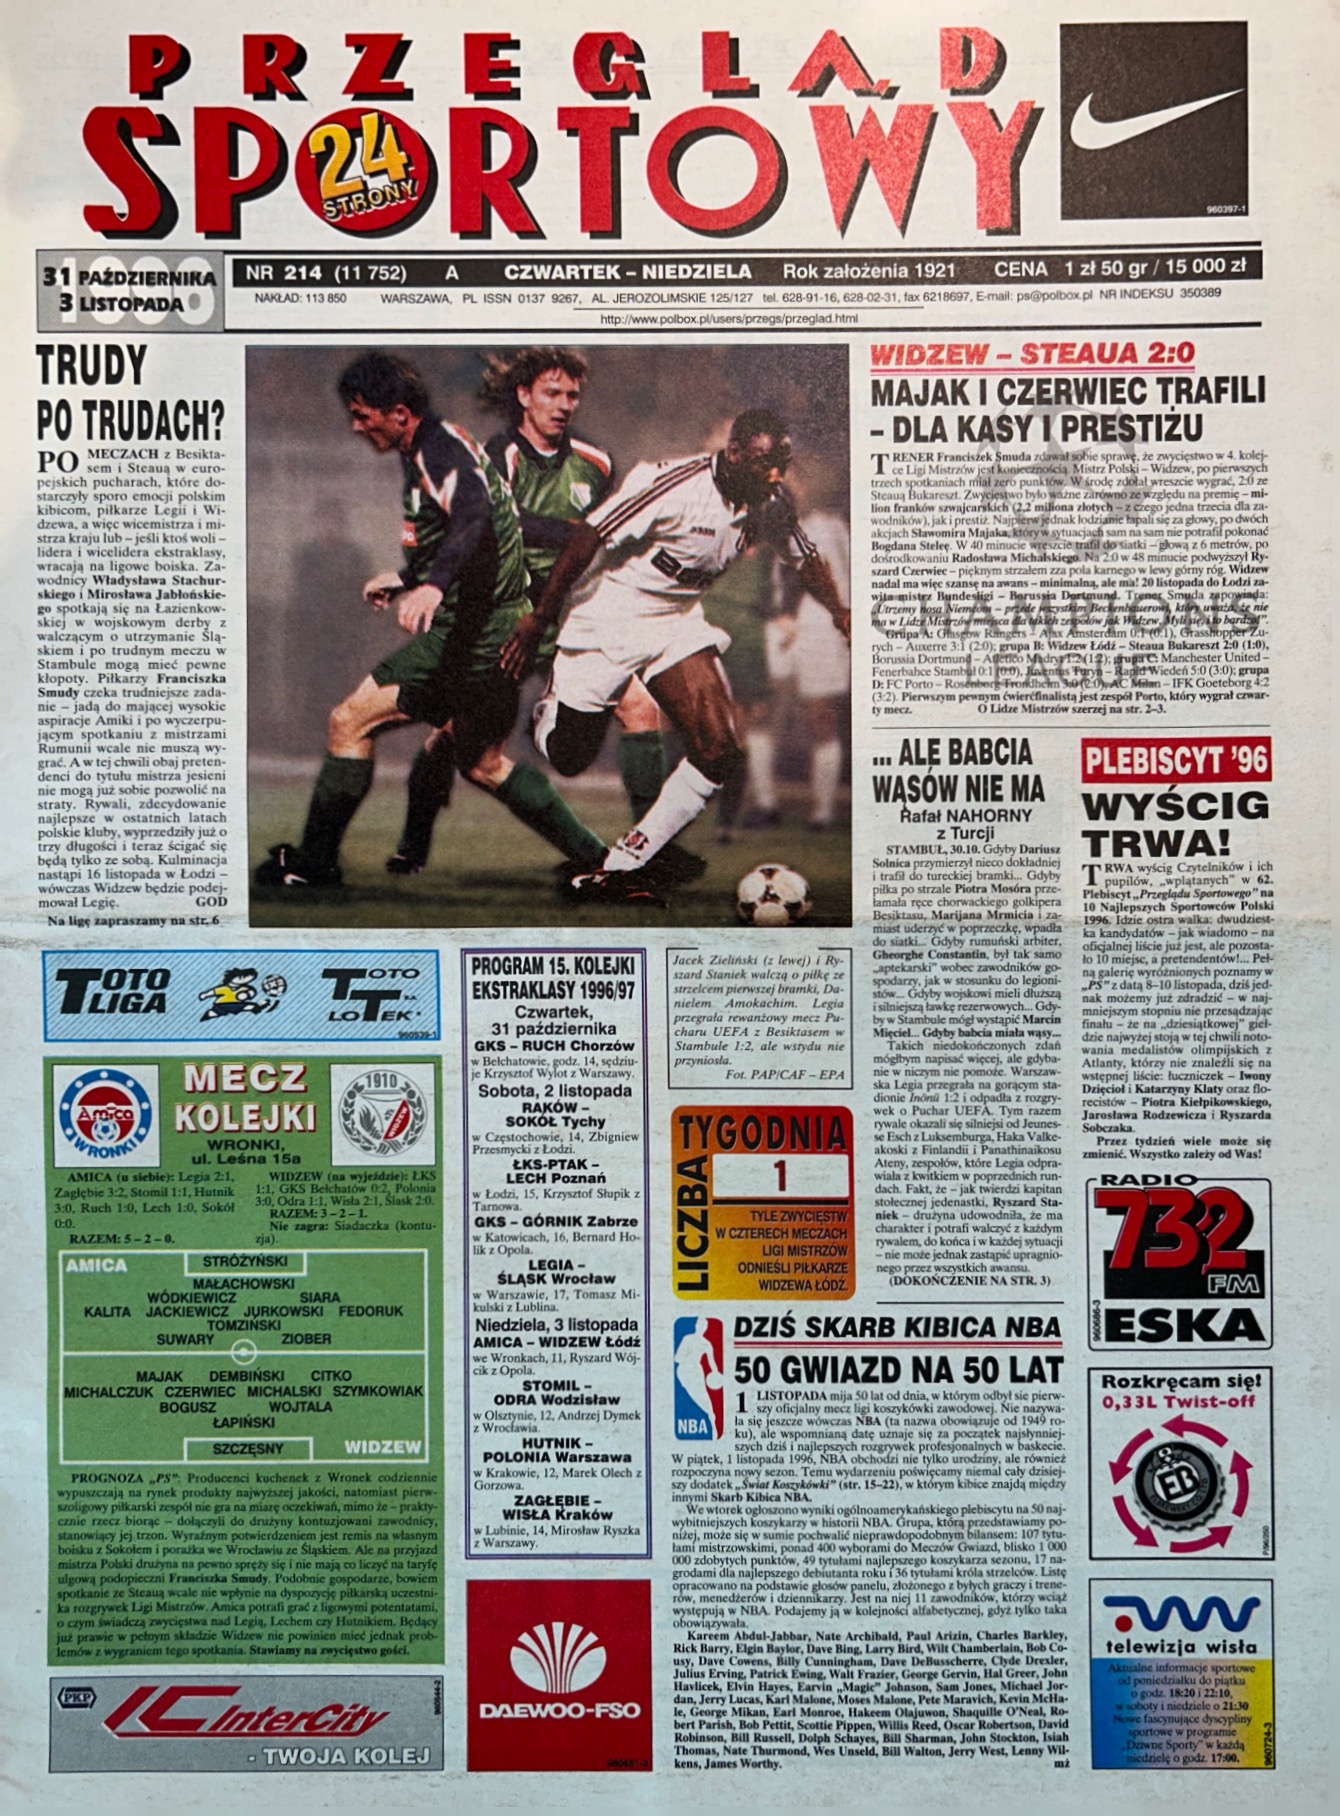 Przegląd Sportowy po meczu Widzew Łódź - Steaua Bukareszt 2:0 (30.10.1996)